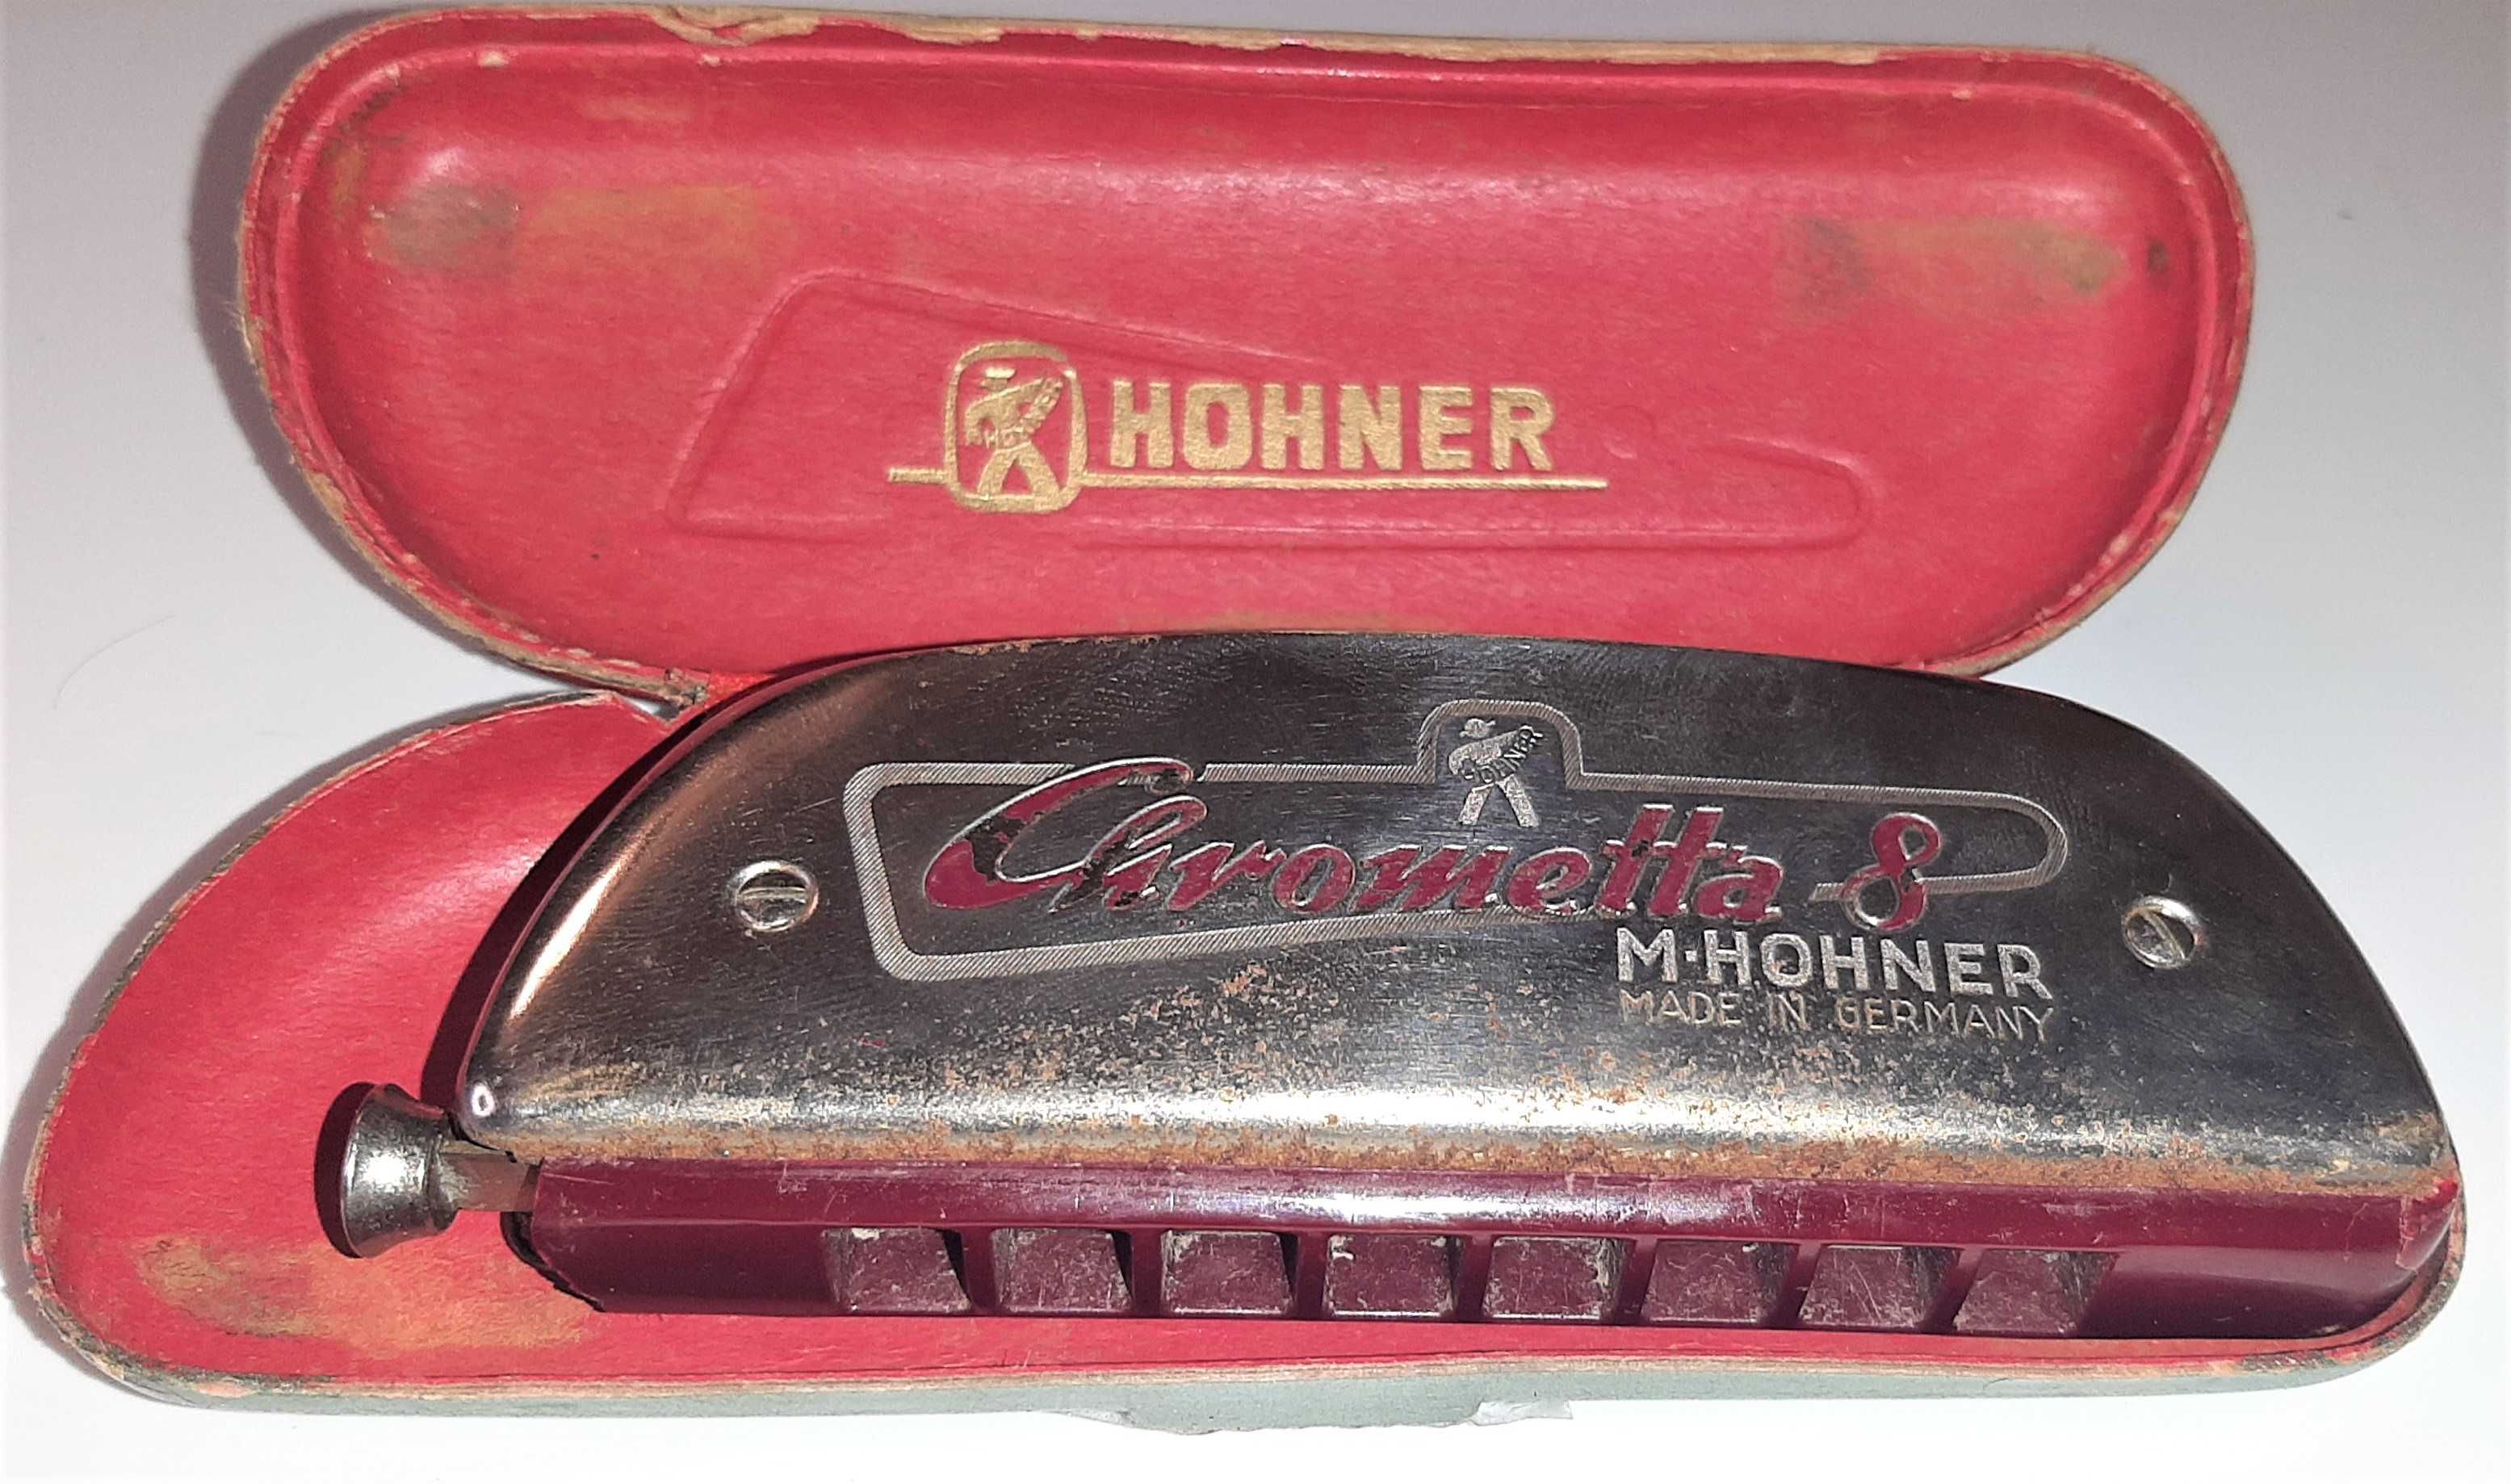 Unikatowa Harmonijka Chrometta 8 M. Hohner - made in Germany